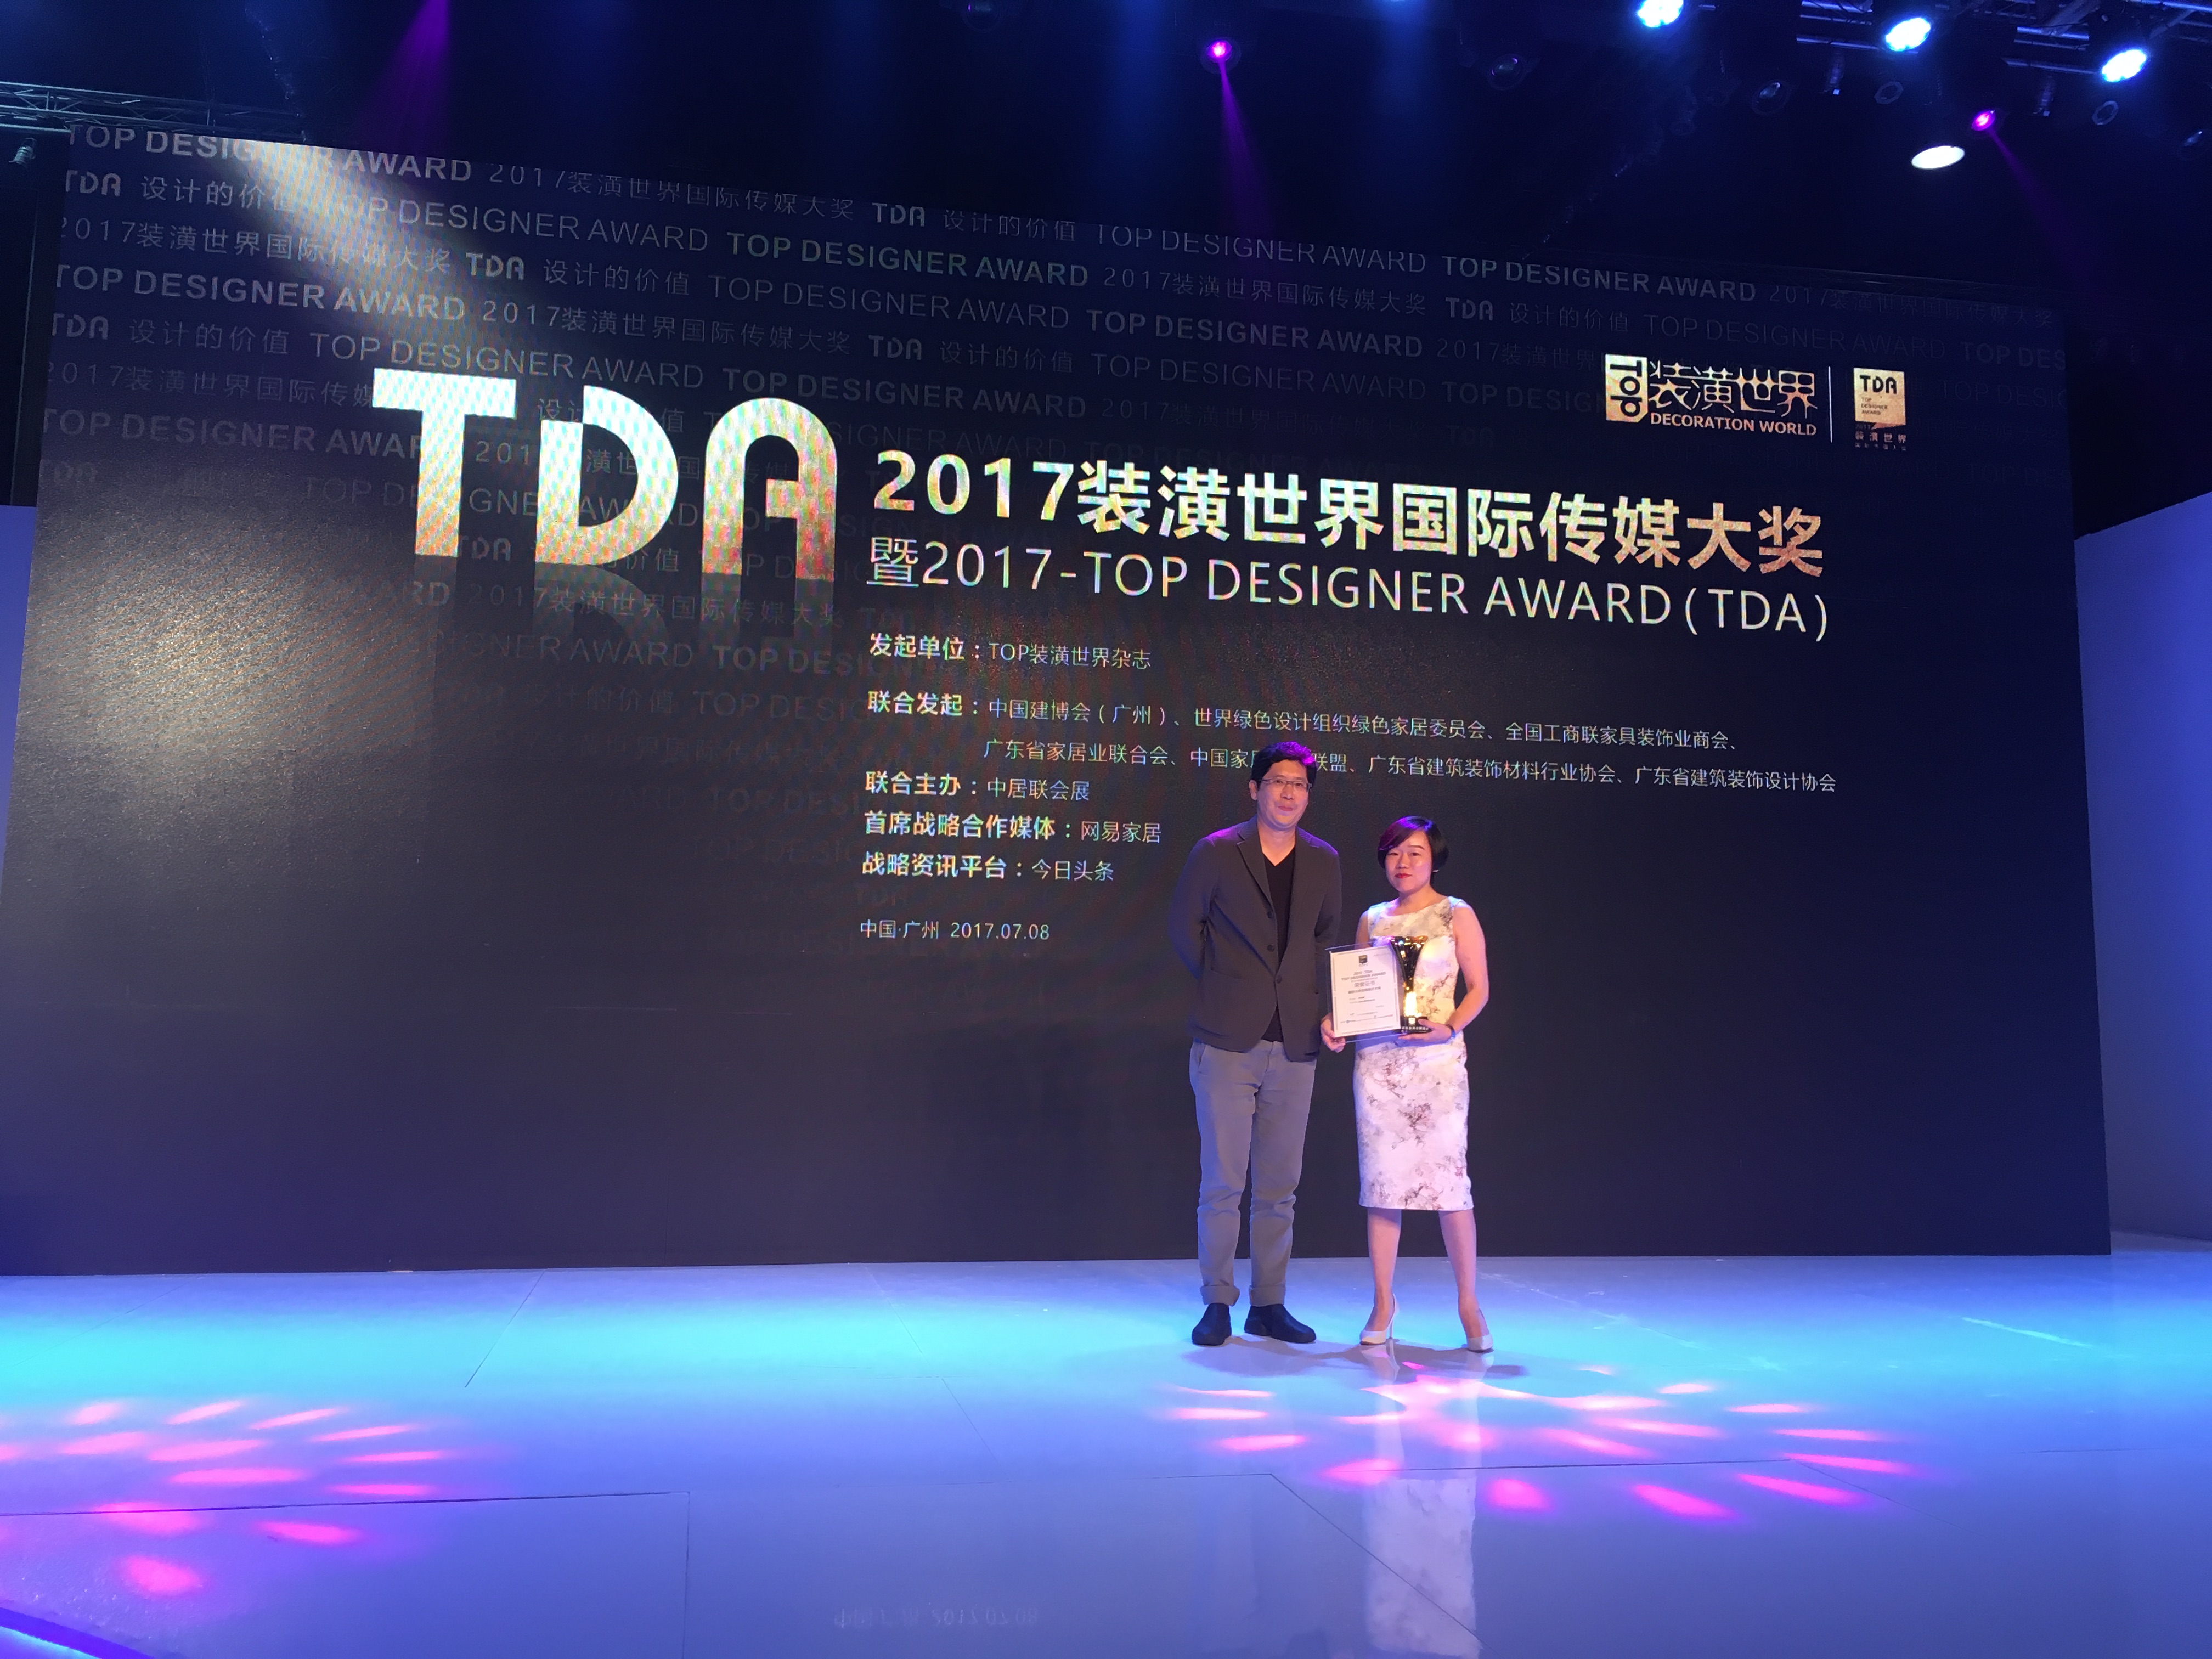 J&A杰恩设计总设计师姜峰先生应邀出席2017装潢世界国际传媒大奖（TDA）颁奖盛典并担任演讲嘉宾